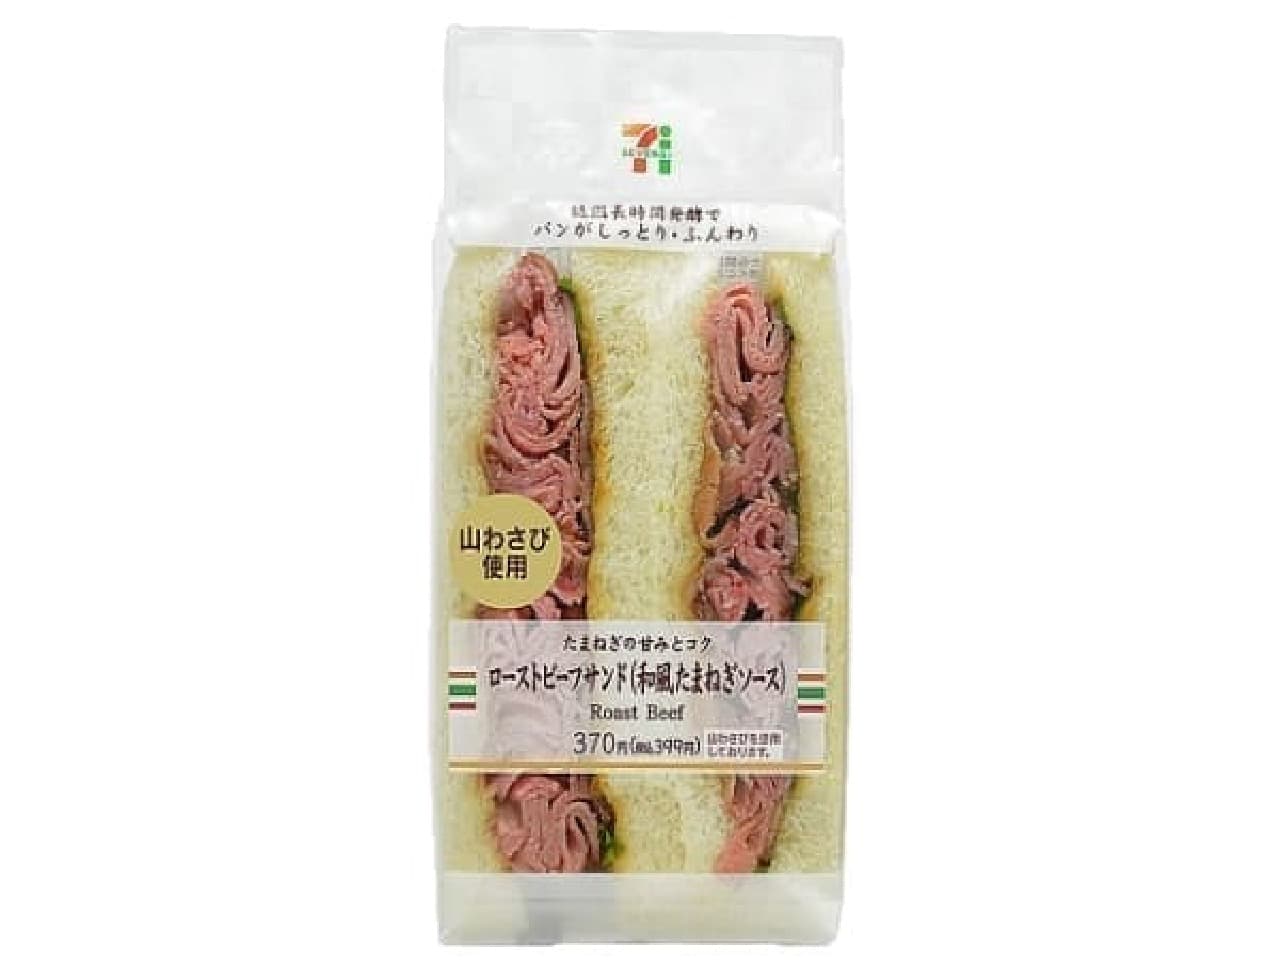 7-ELEVEN "Roast Beef Sandwich (Japanese-style Onion)"